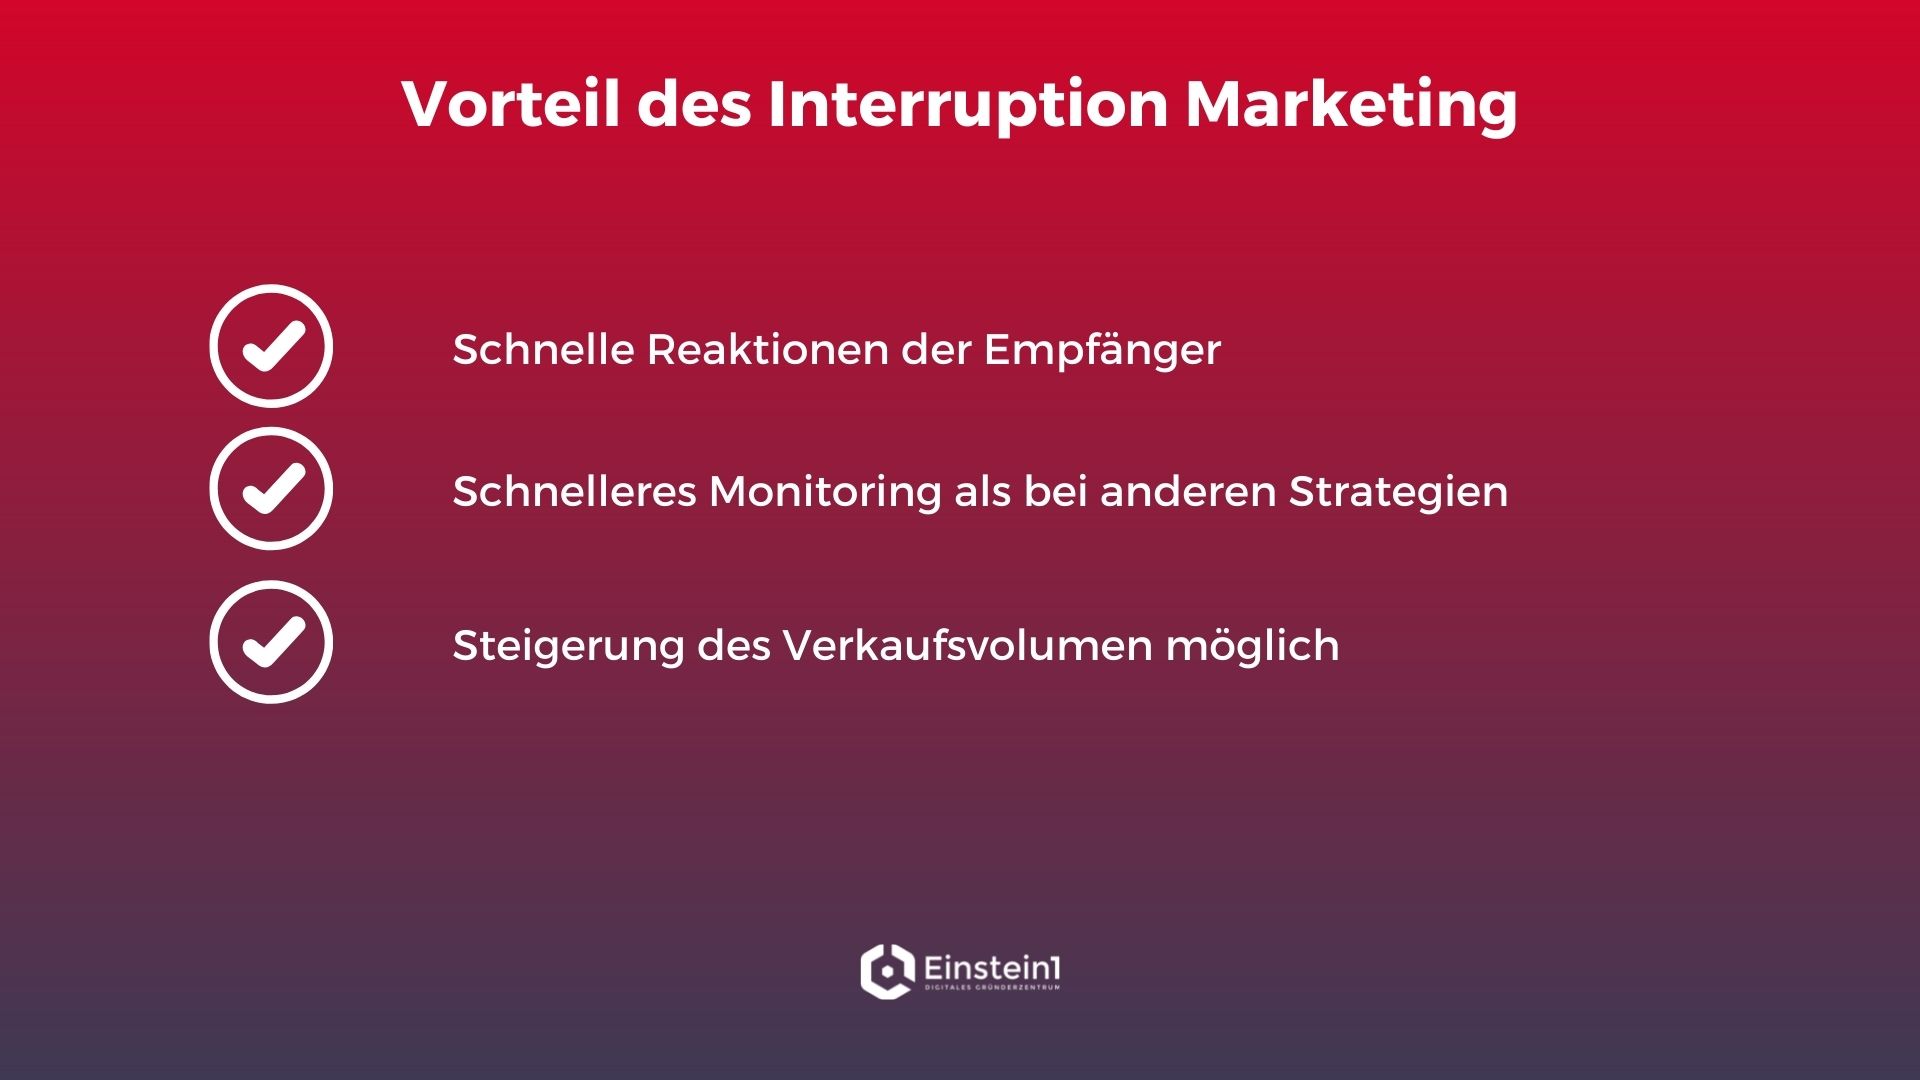 interruption-marketing-vorteil-einstein1